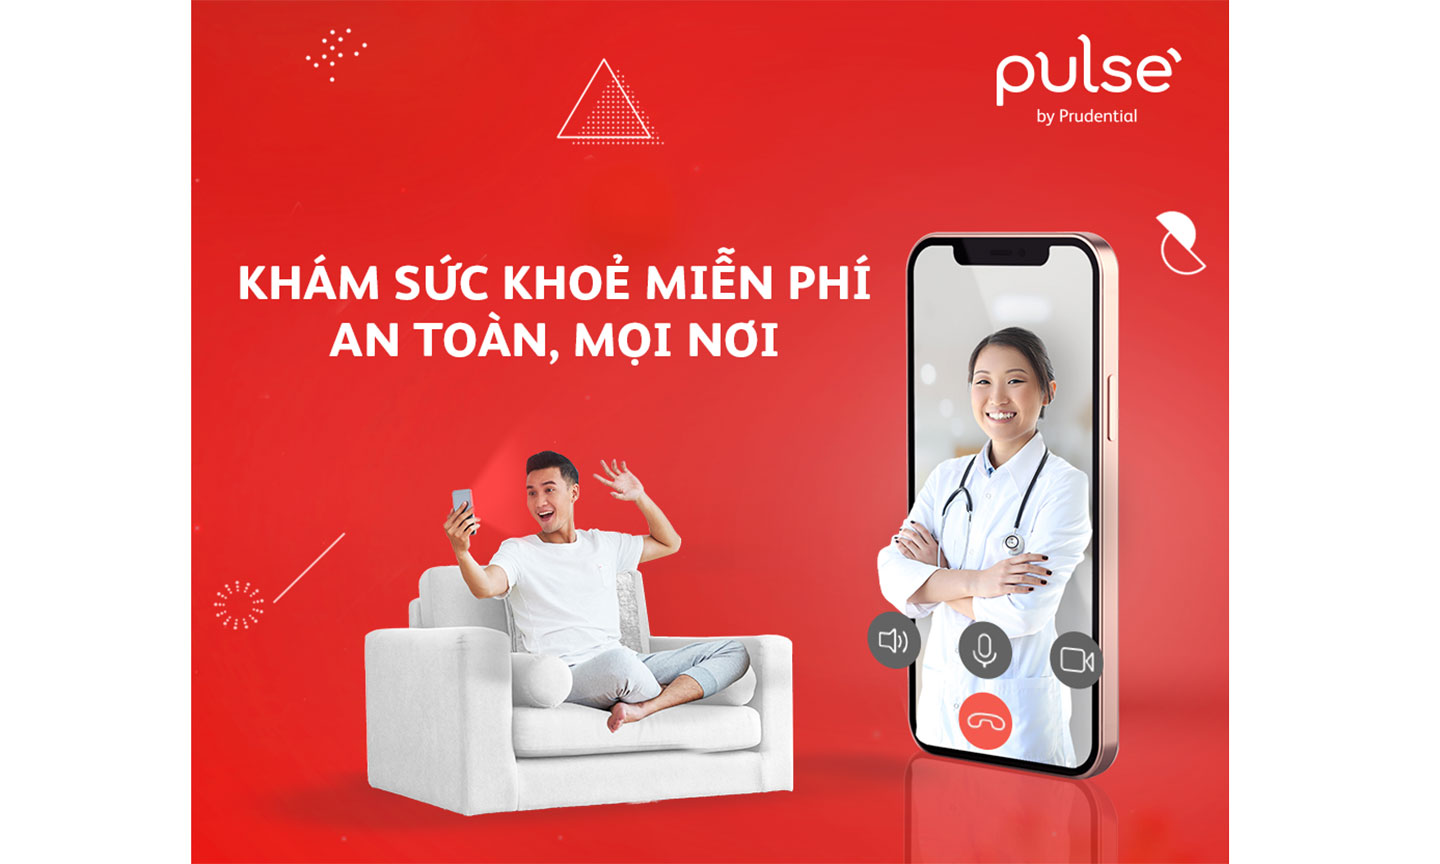 Tải ngay ứng dụng Pulse và trải nghiệm chương trình Tư vấn sức khỏe miễn phí với Bác sĩ trực tuyến.